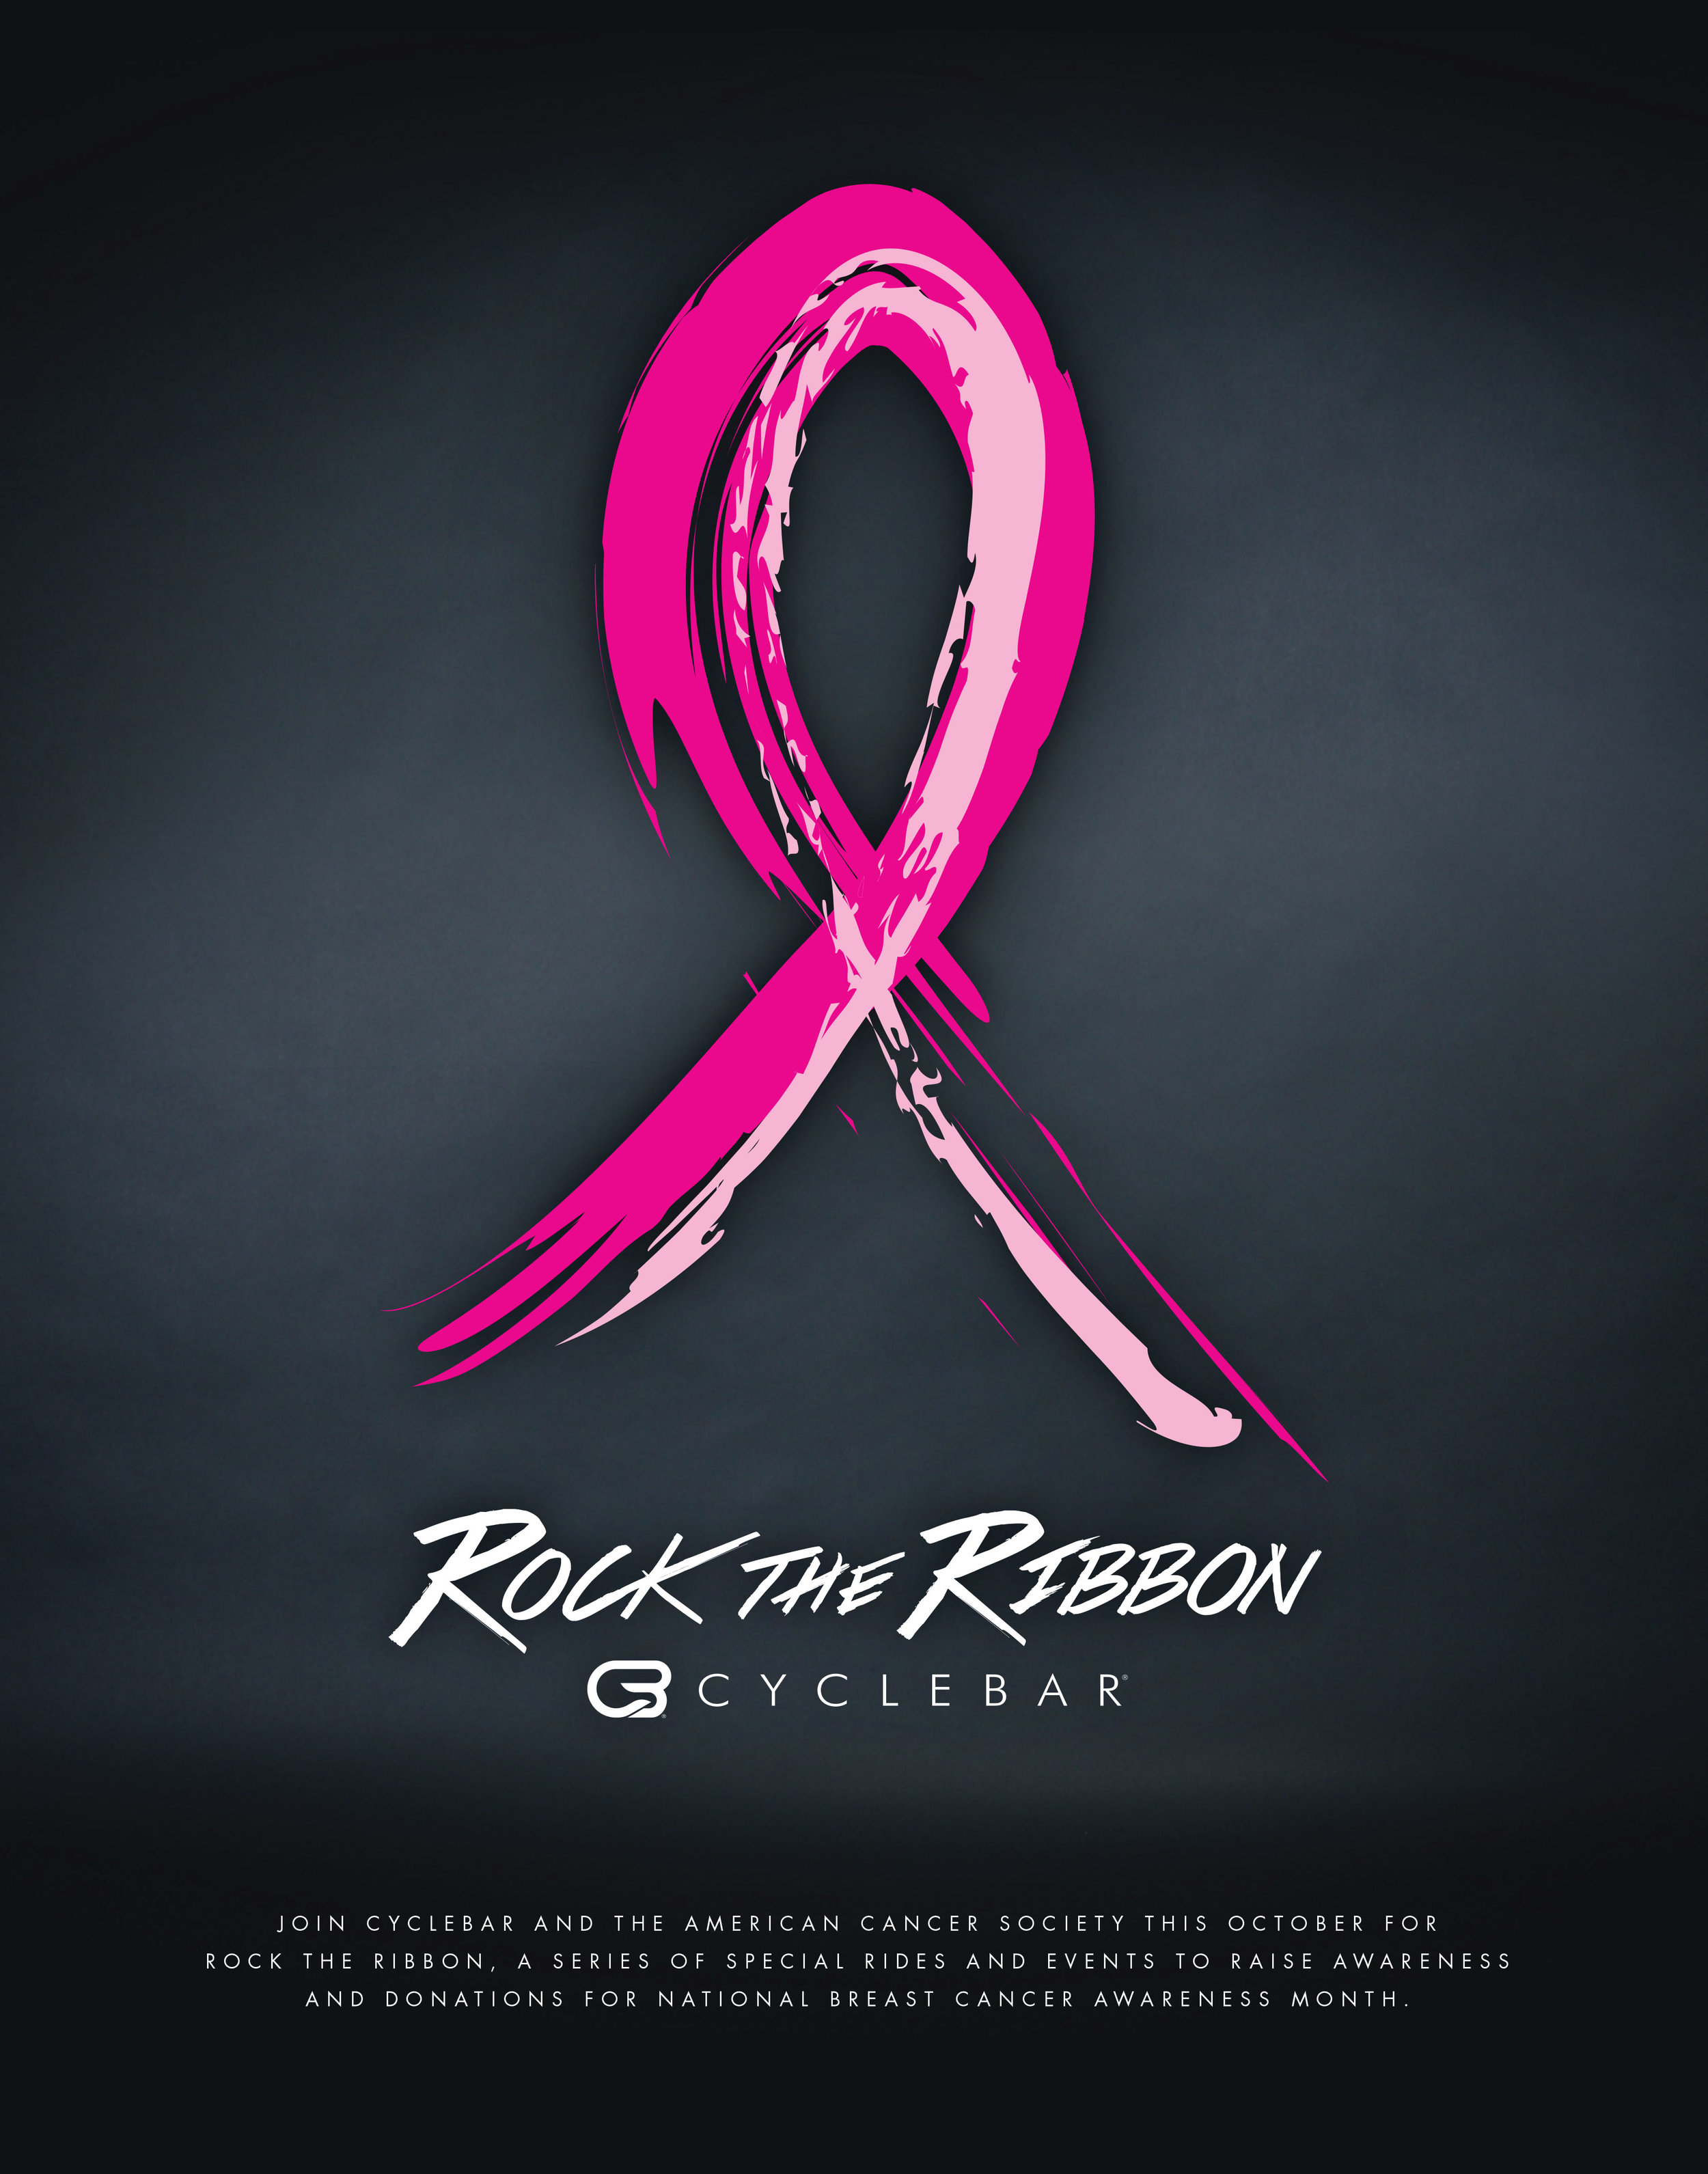 Cyclebar Rock The Ribbon Pat Morgan Graphic Design